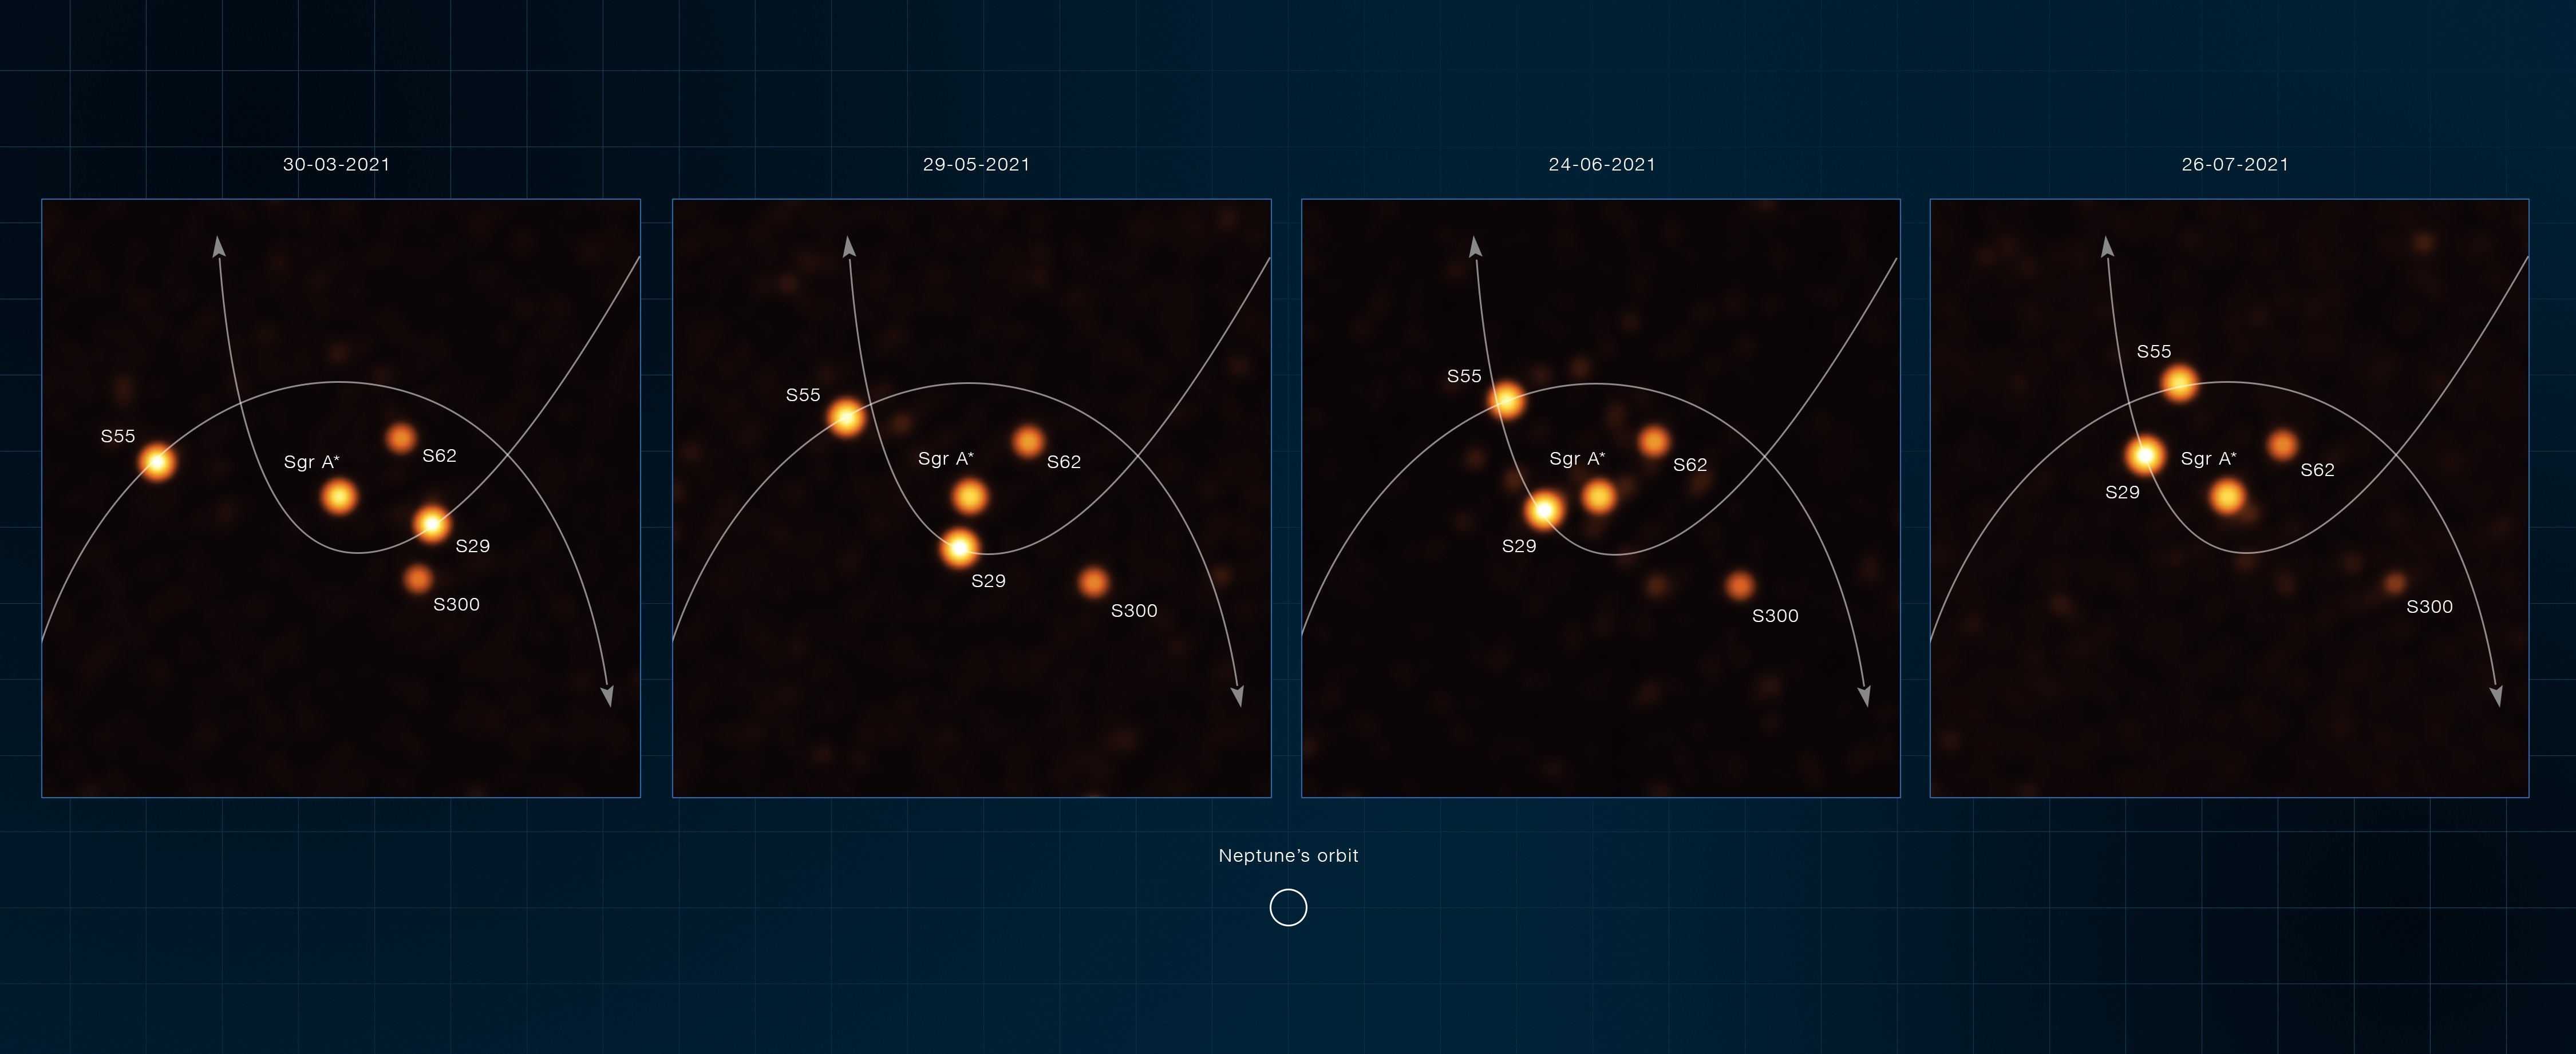 Imágenes que muestran estrellas orbitando muy cerca de Sagitario A*, el agujero negro supermasivo en el corazón de la Vía Láctea. EFE/ESO/Gravity collaboration/Foto cedida
